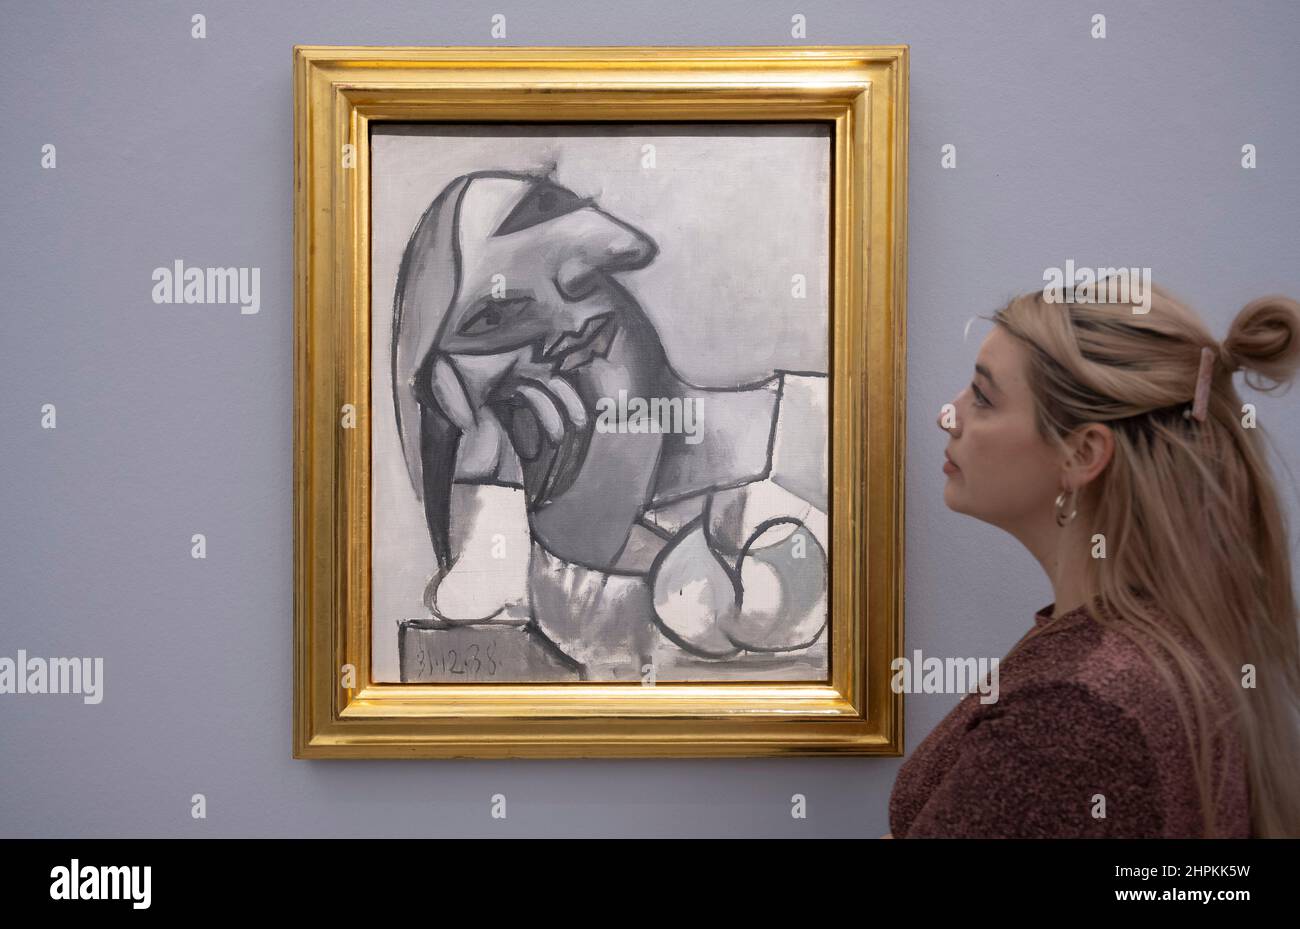 Sotheby's, Londres, Reino Unido. 22 de febrero de 2022. Obras de Magritte, Monet, Picasso, Hockney, van Gogh, Renoir y Banksy en exhibición para la subasta moderna y contemporánea de la tarde y ahora la subasta de la tarde el 2 de marzo en Londres. Imagen: Retrato monocromático de Picasso de sus dos rivales amantes, en el mercado por primera vez, Buste de femme accoudée, gris et blanc, estimación de 10.000.000-15.000.000 libras esterlinas. Crédito: Malcolm Park/Alamy Live News. Foto de stock